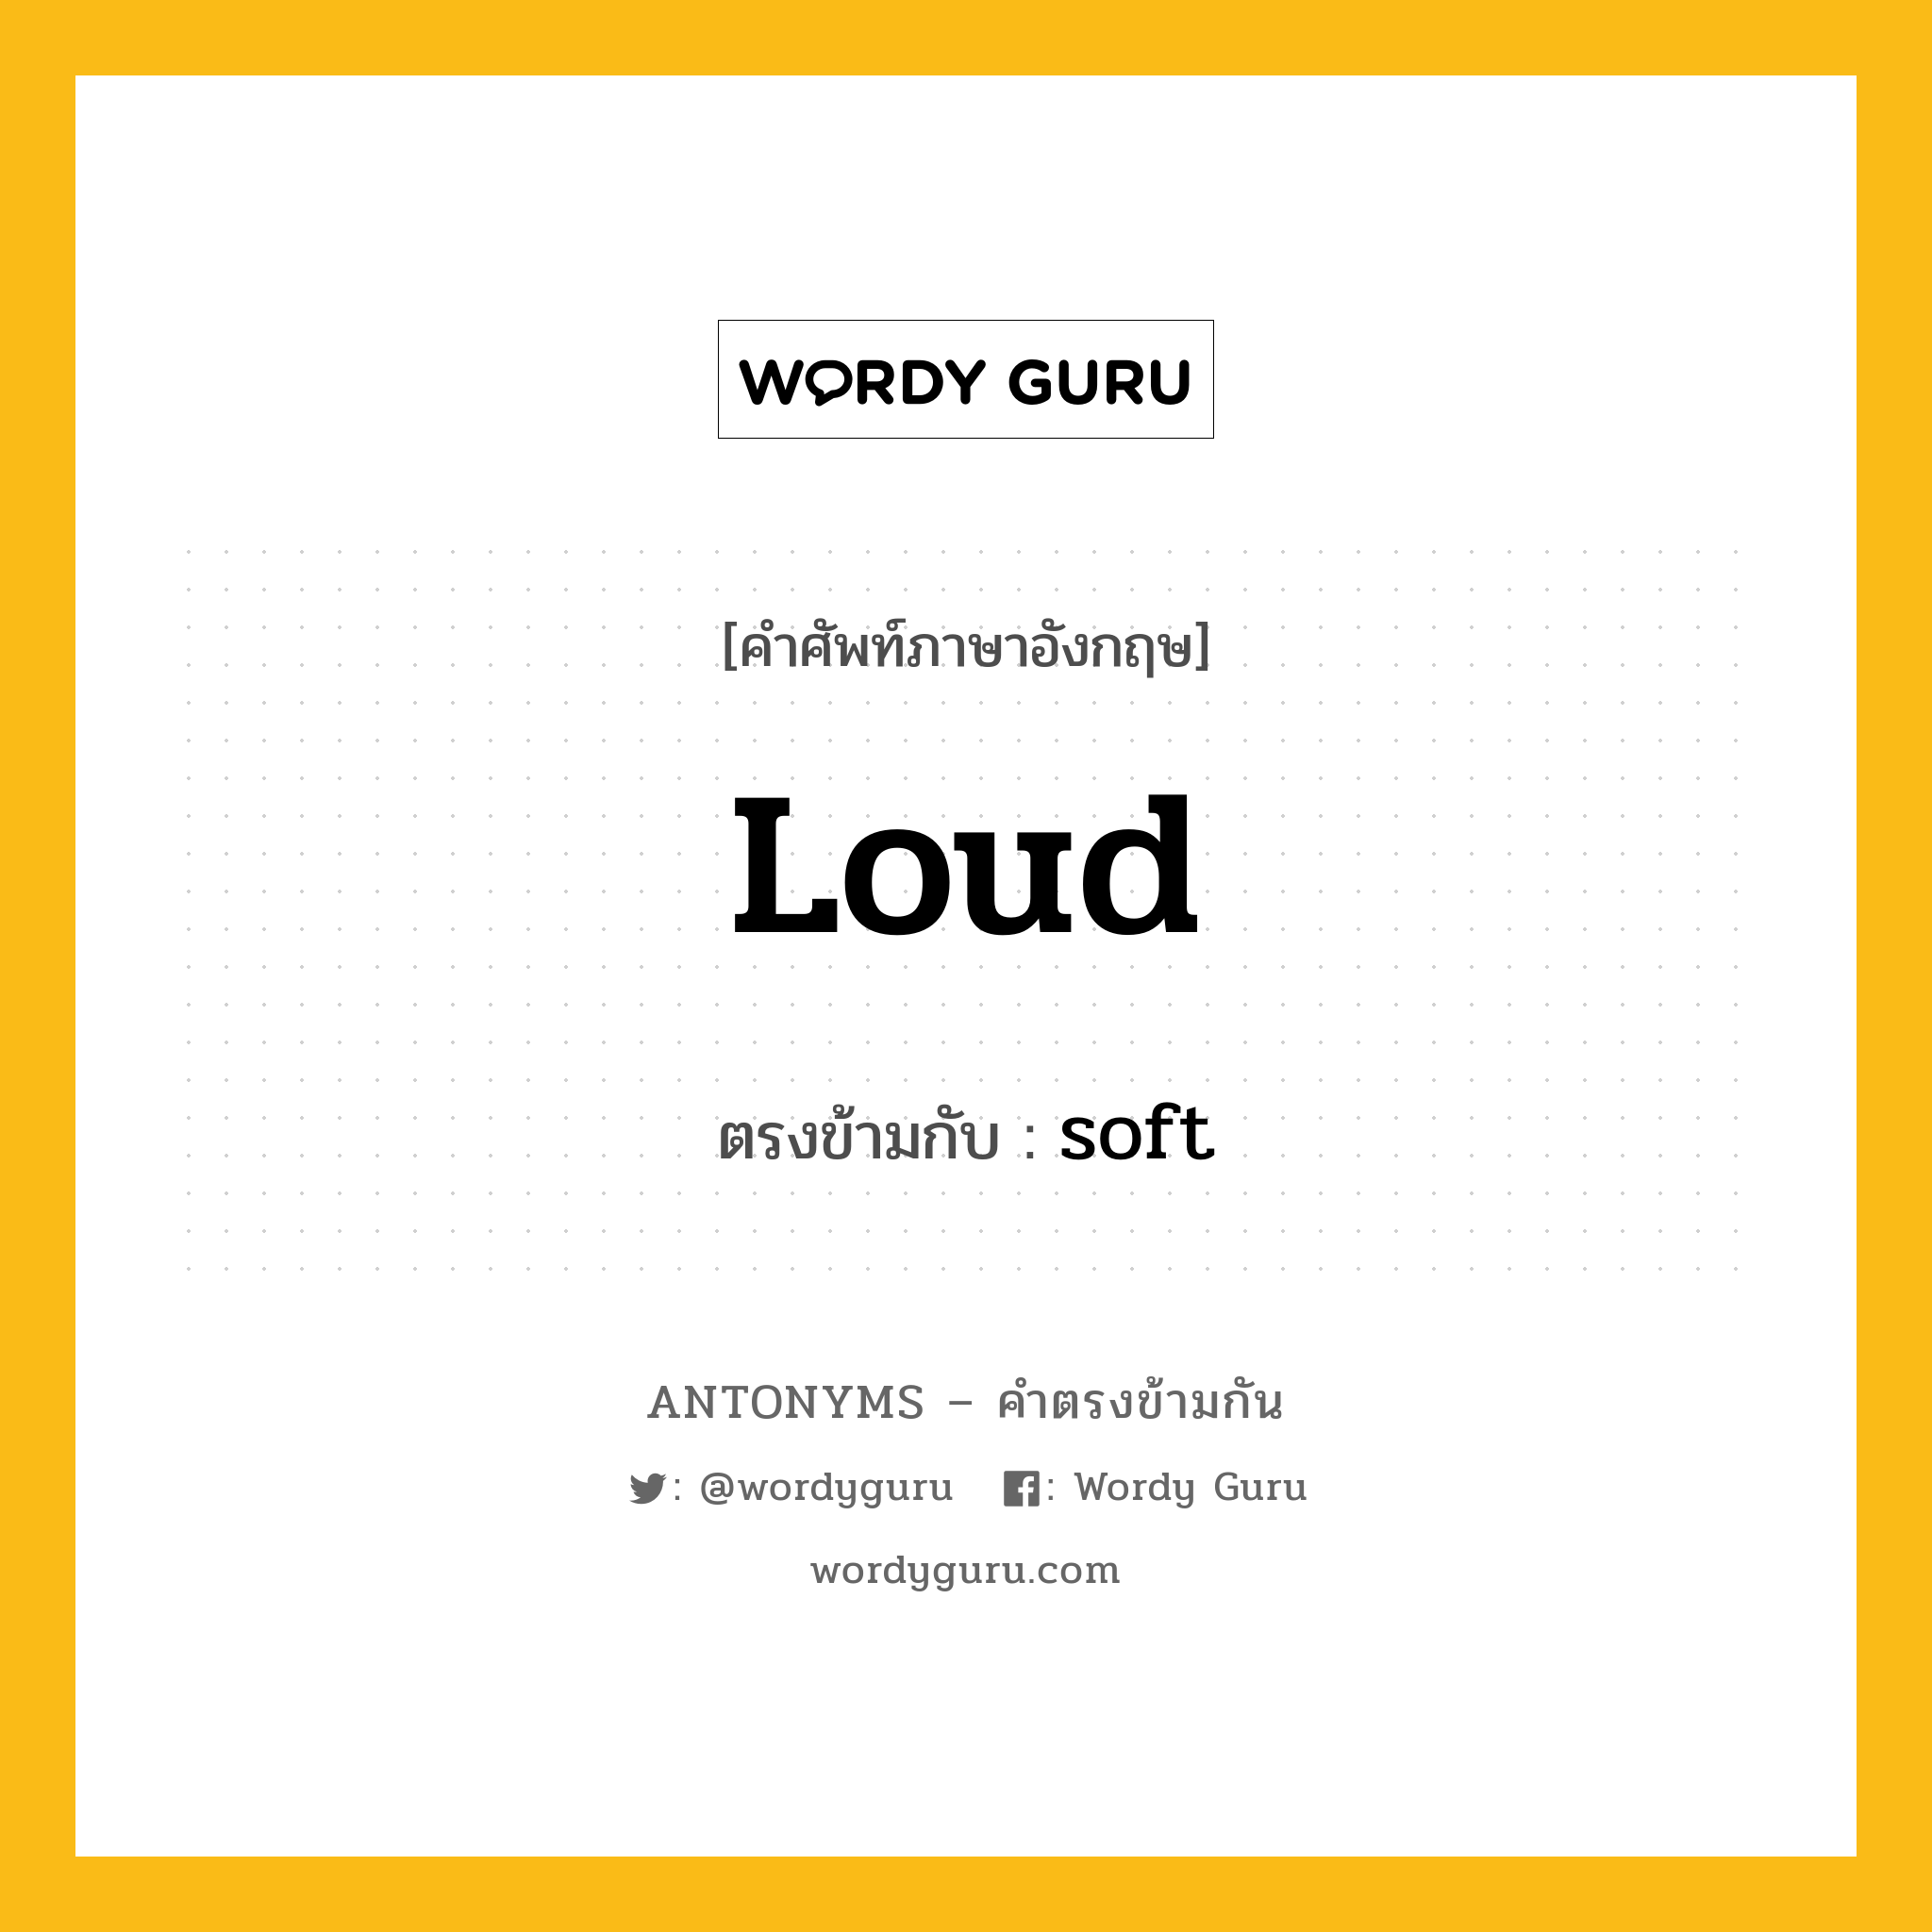 loud เป็นคำตรงข้ามกับคำไหนบ้าง?, คำศัพท์ภาษาอังกฤษ loud ตรงข้ามกับ soft หมวด soft